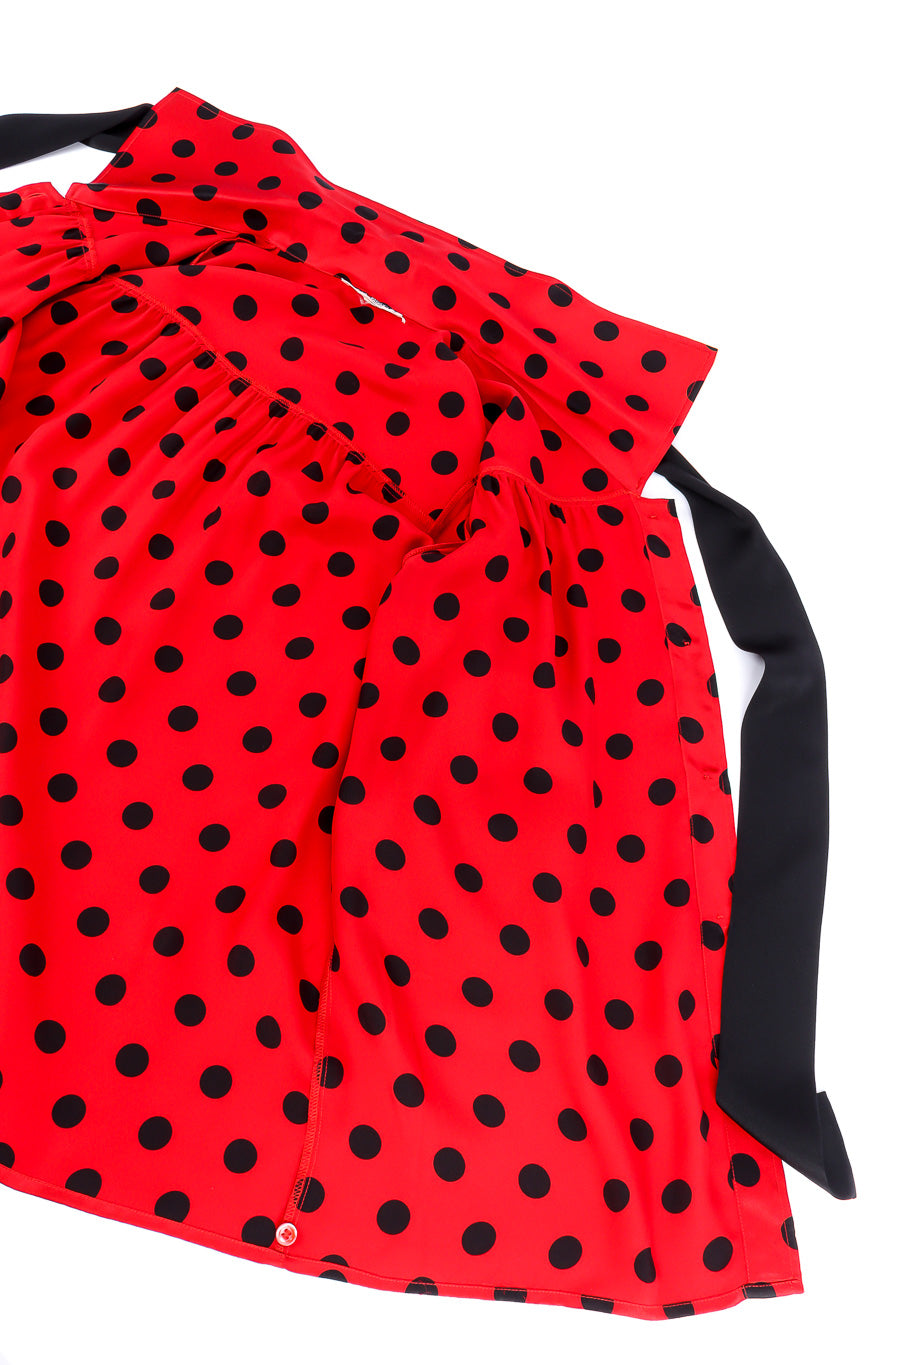 Yves Saint Laurent polka dot silk blouse flat-lay @recessla